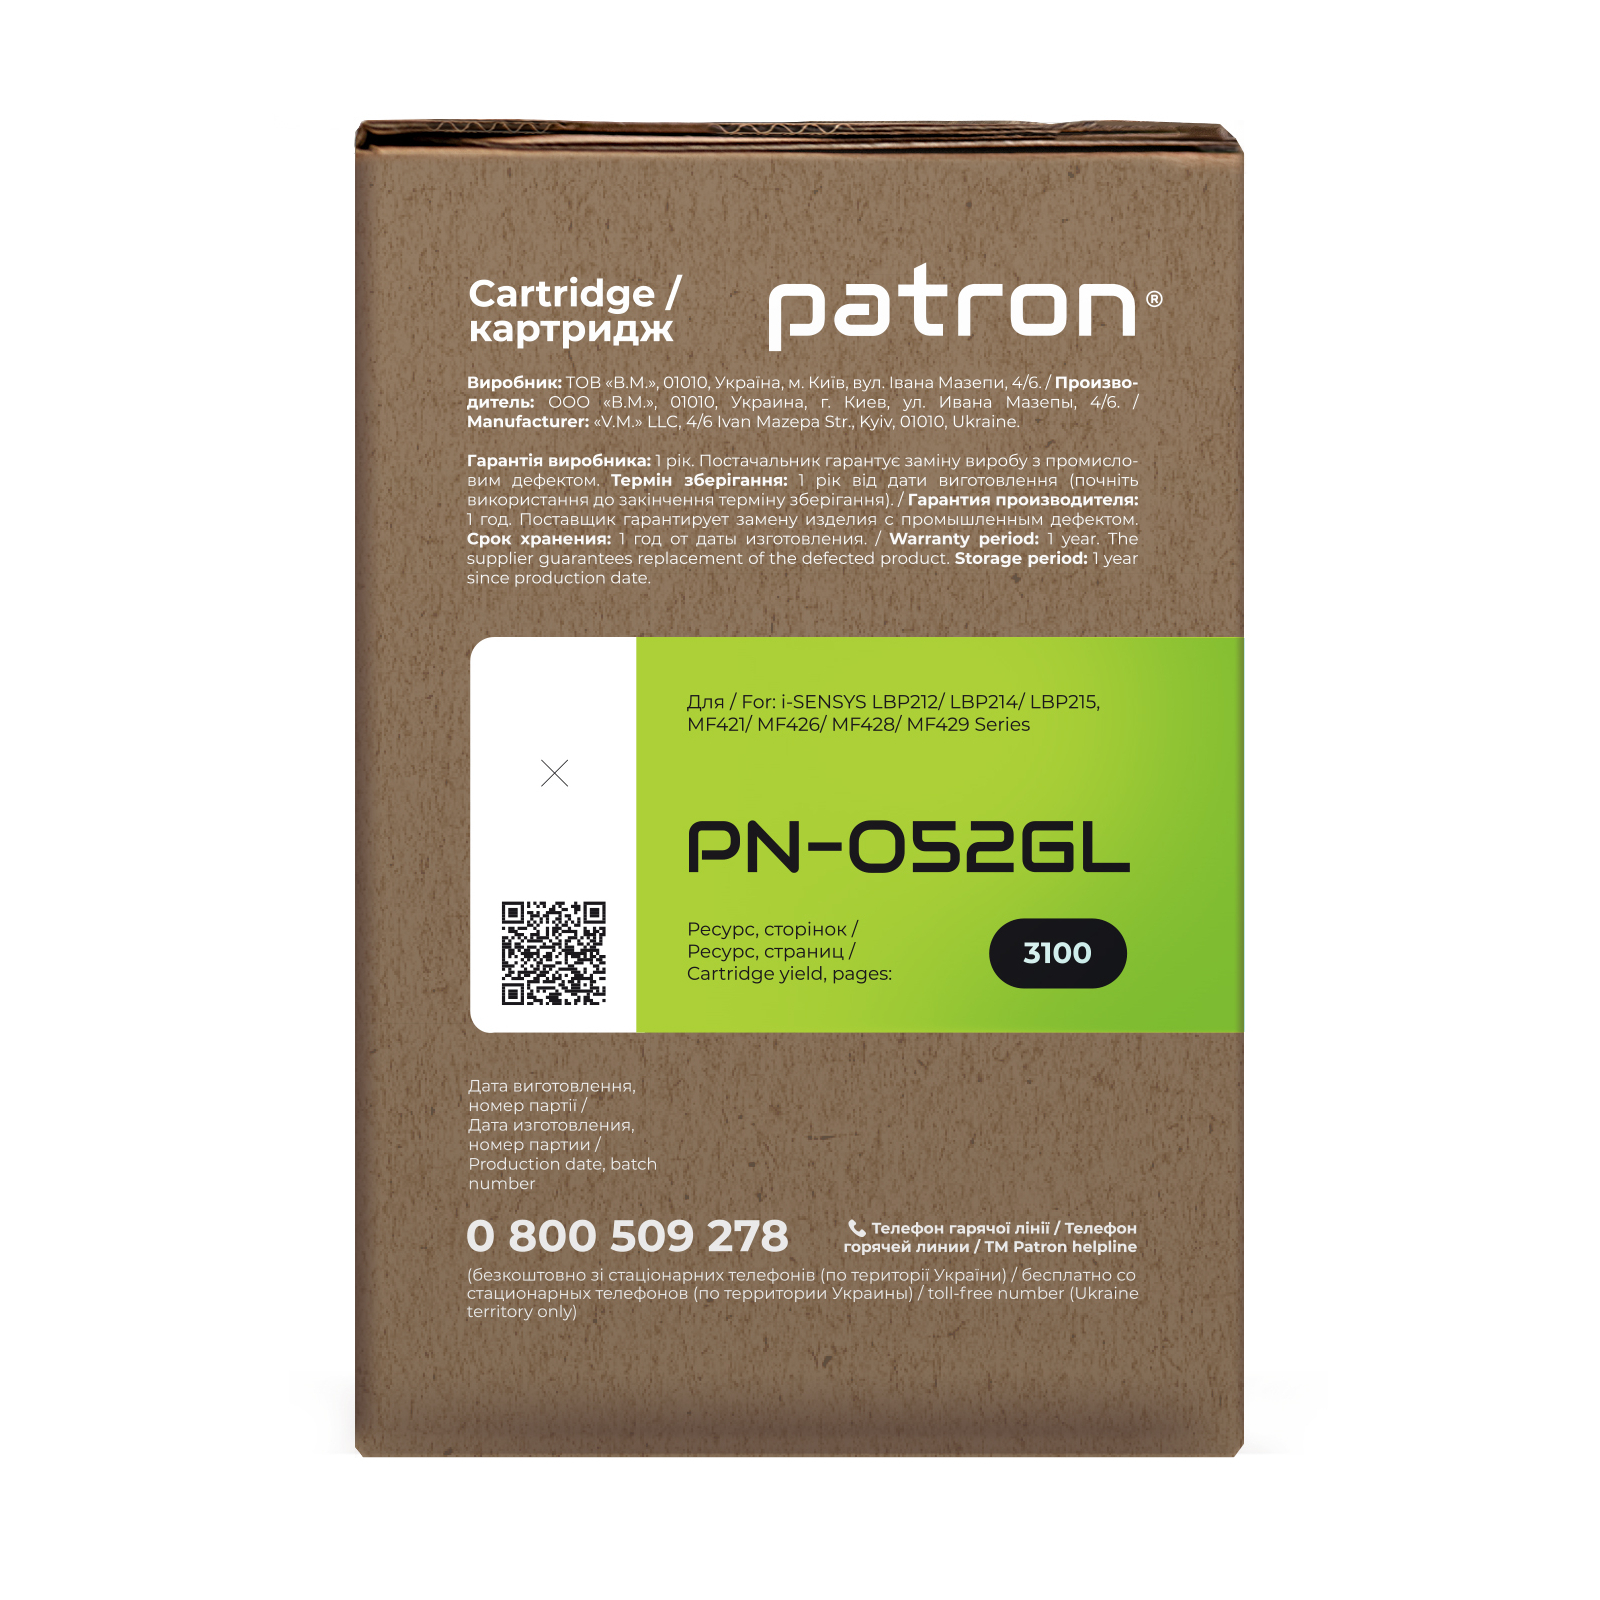 Картридж Patron CANON 052 GREEN Label (PN-052GL) зображення 3